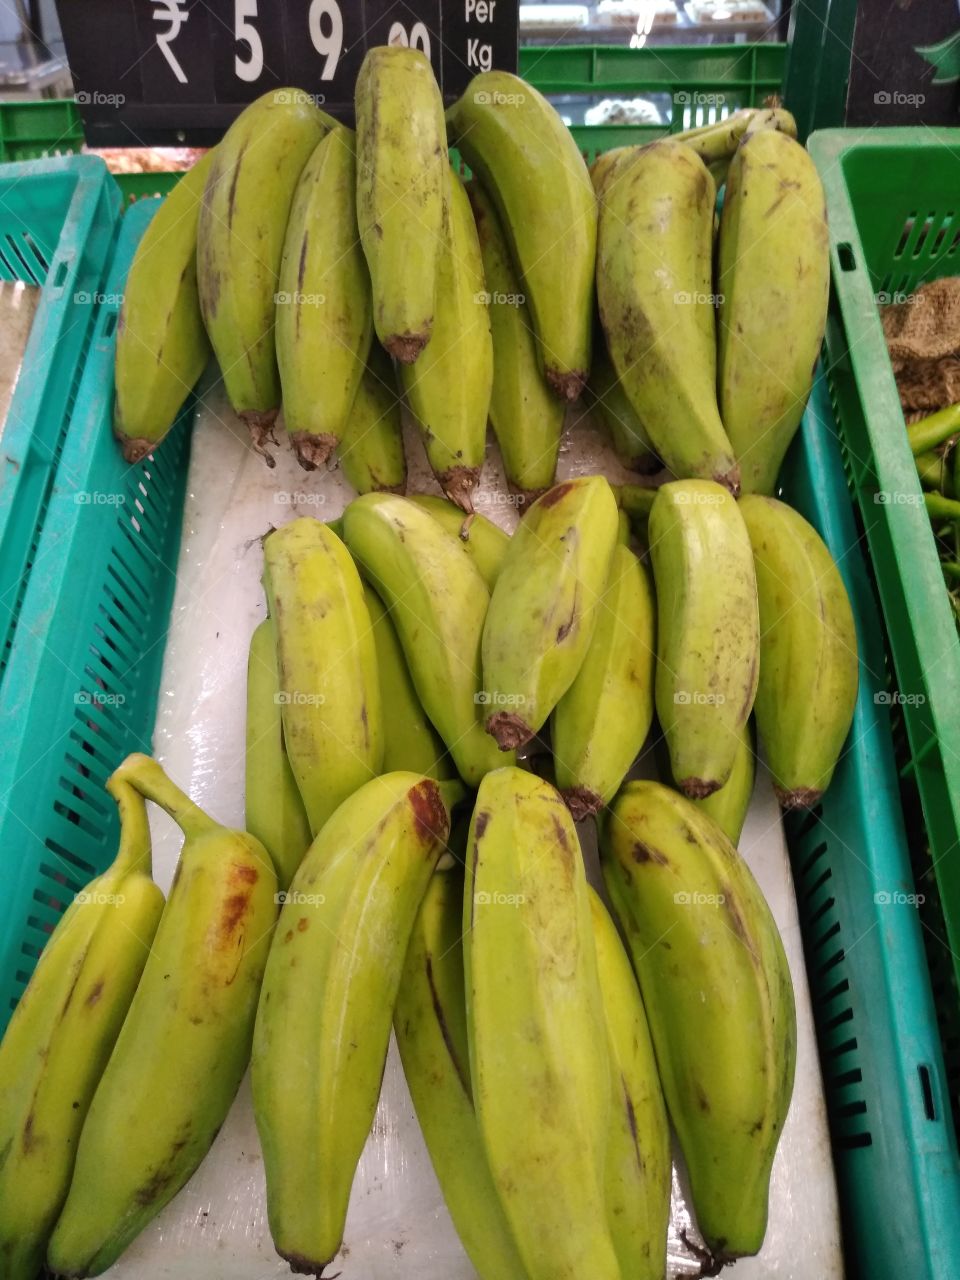 Raw banana